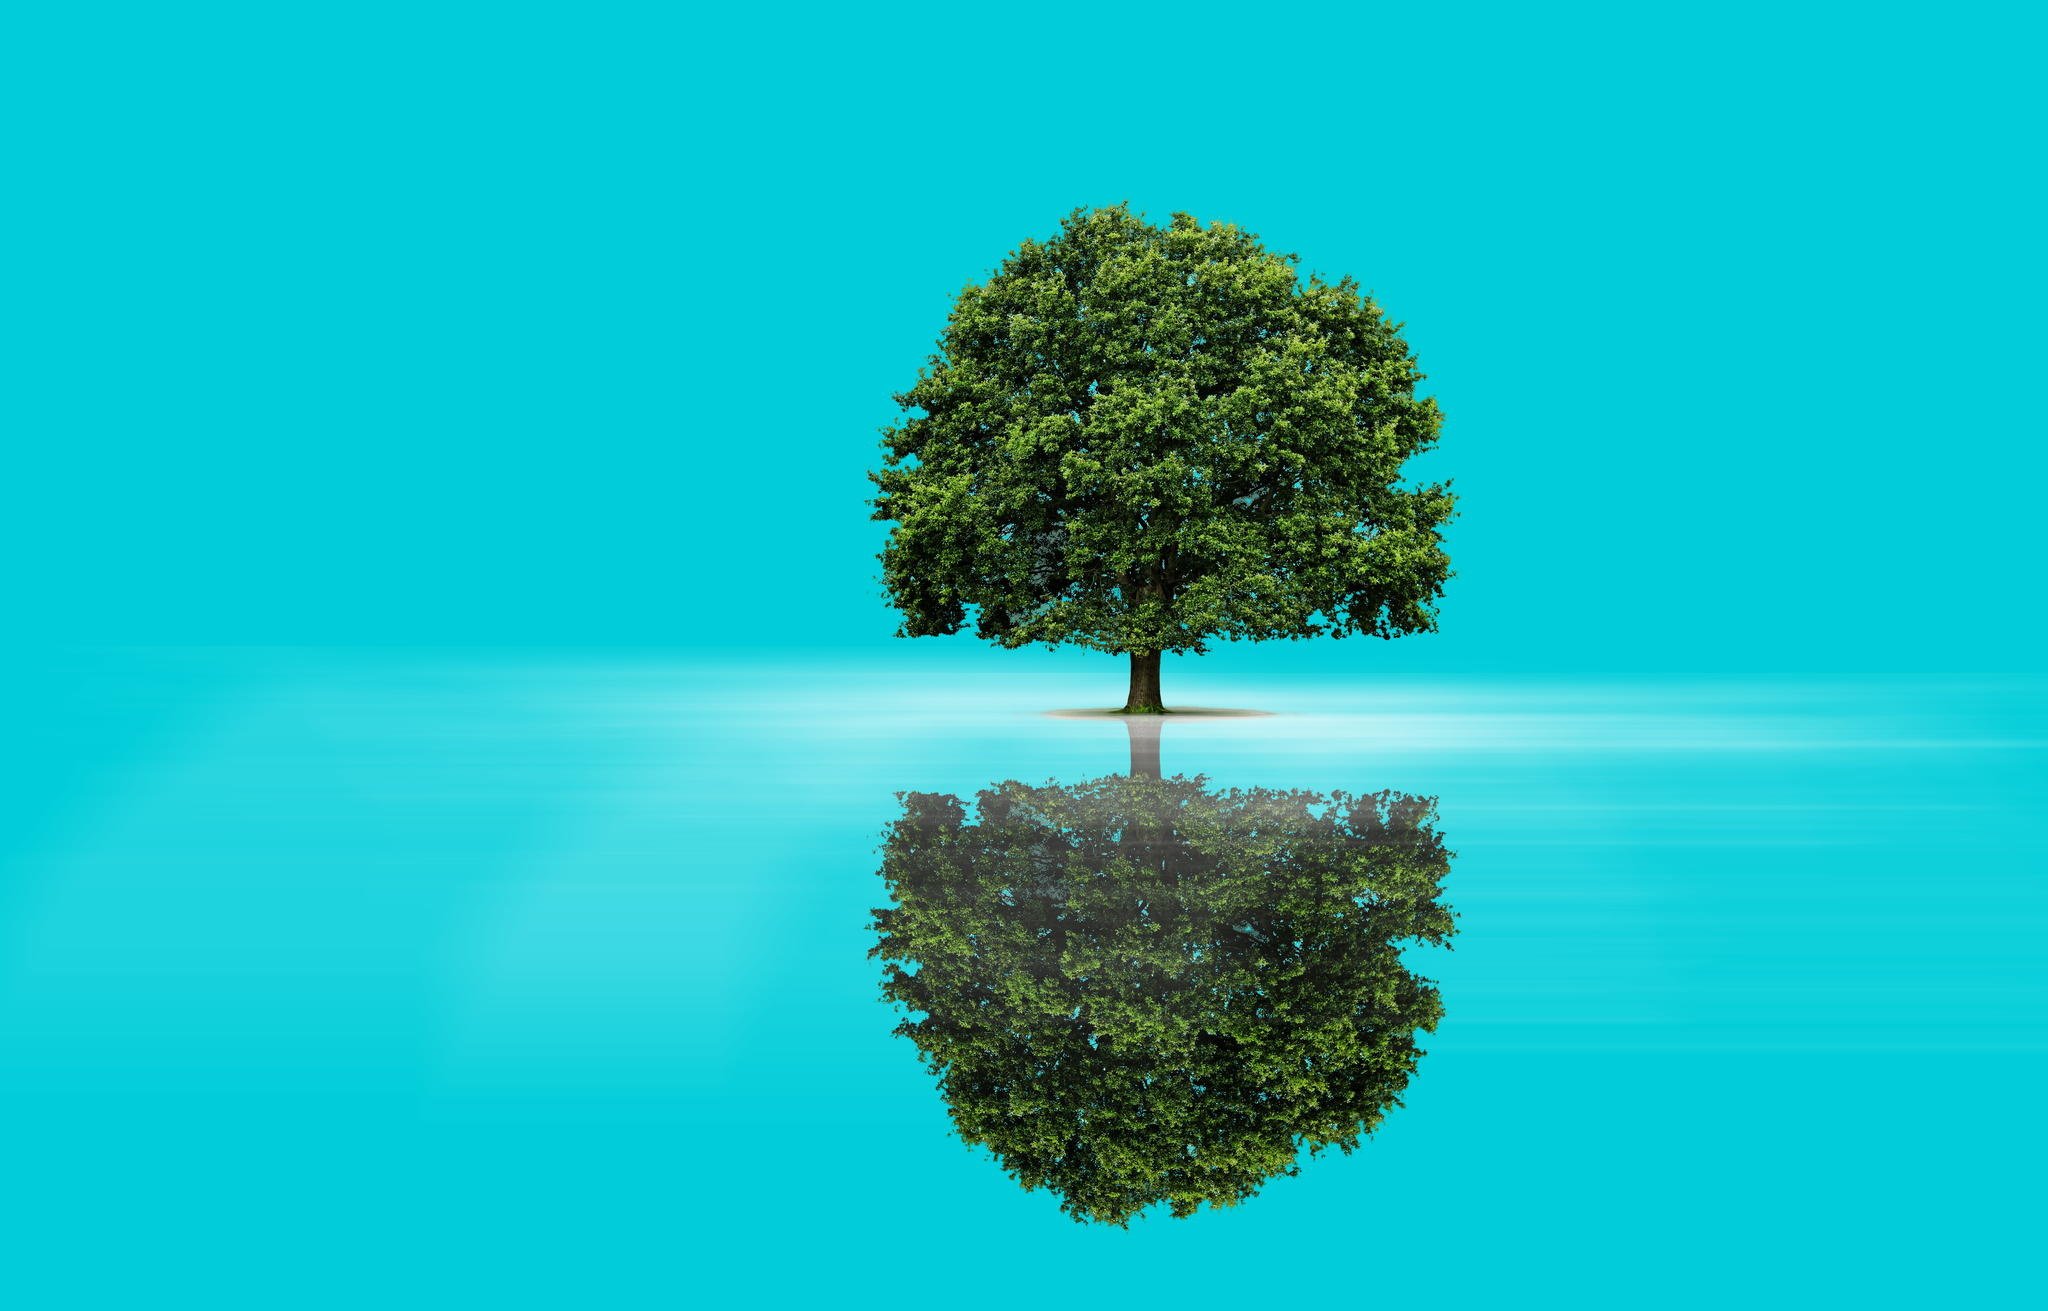 Скачать обои бесплатно Вода, Отражение, Дерево, Синий, Художественные картинка на рабочий стол ПК